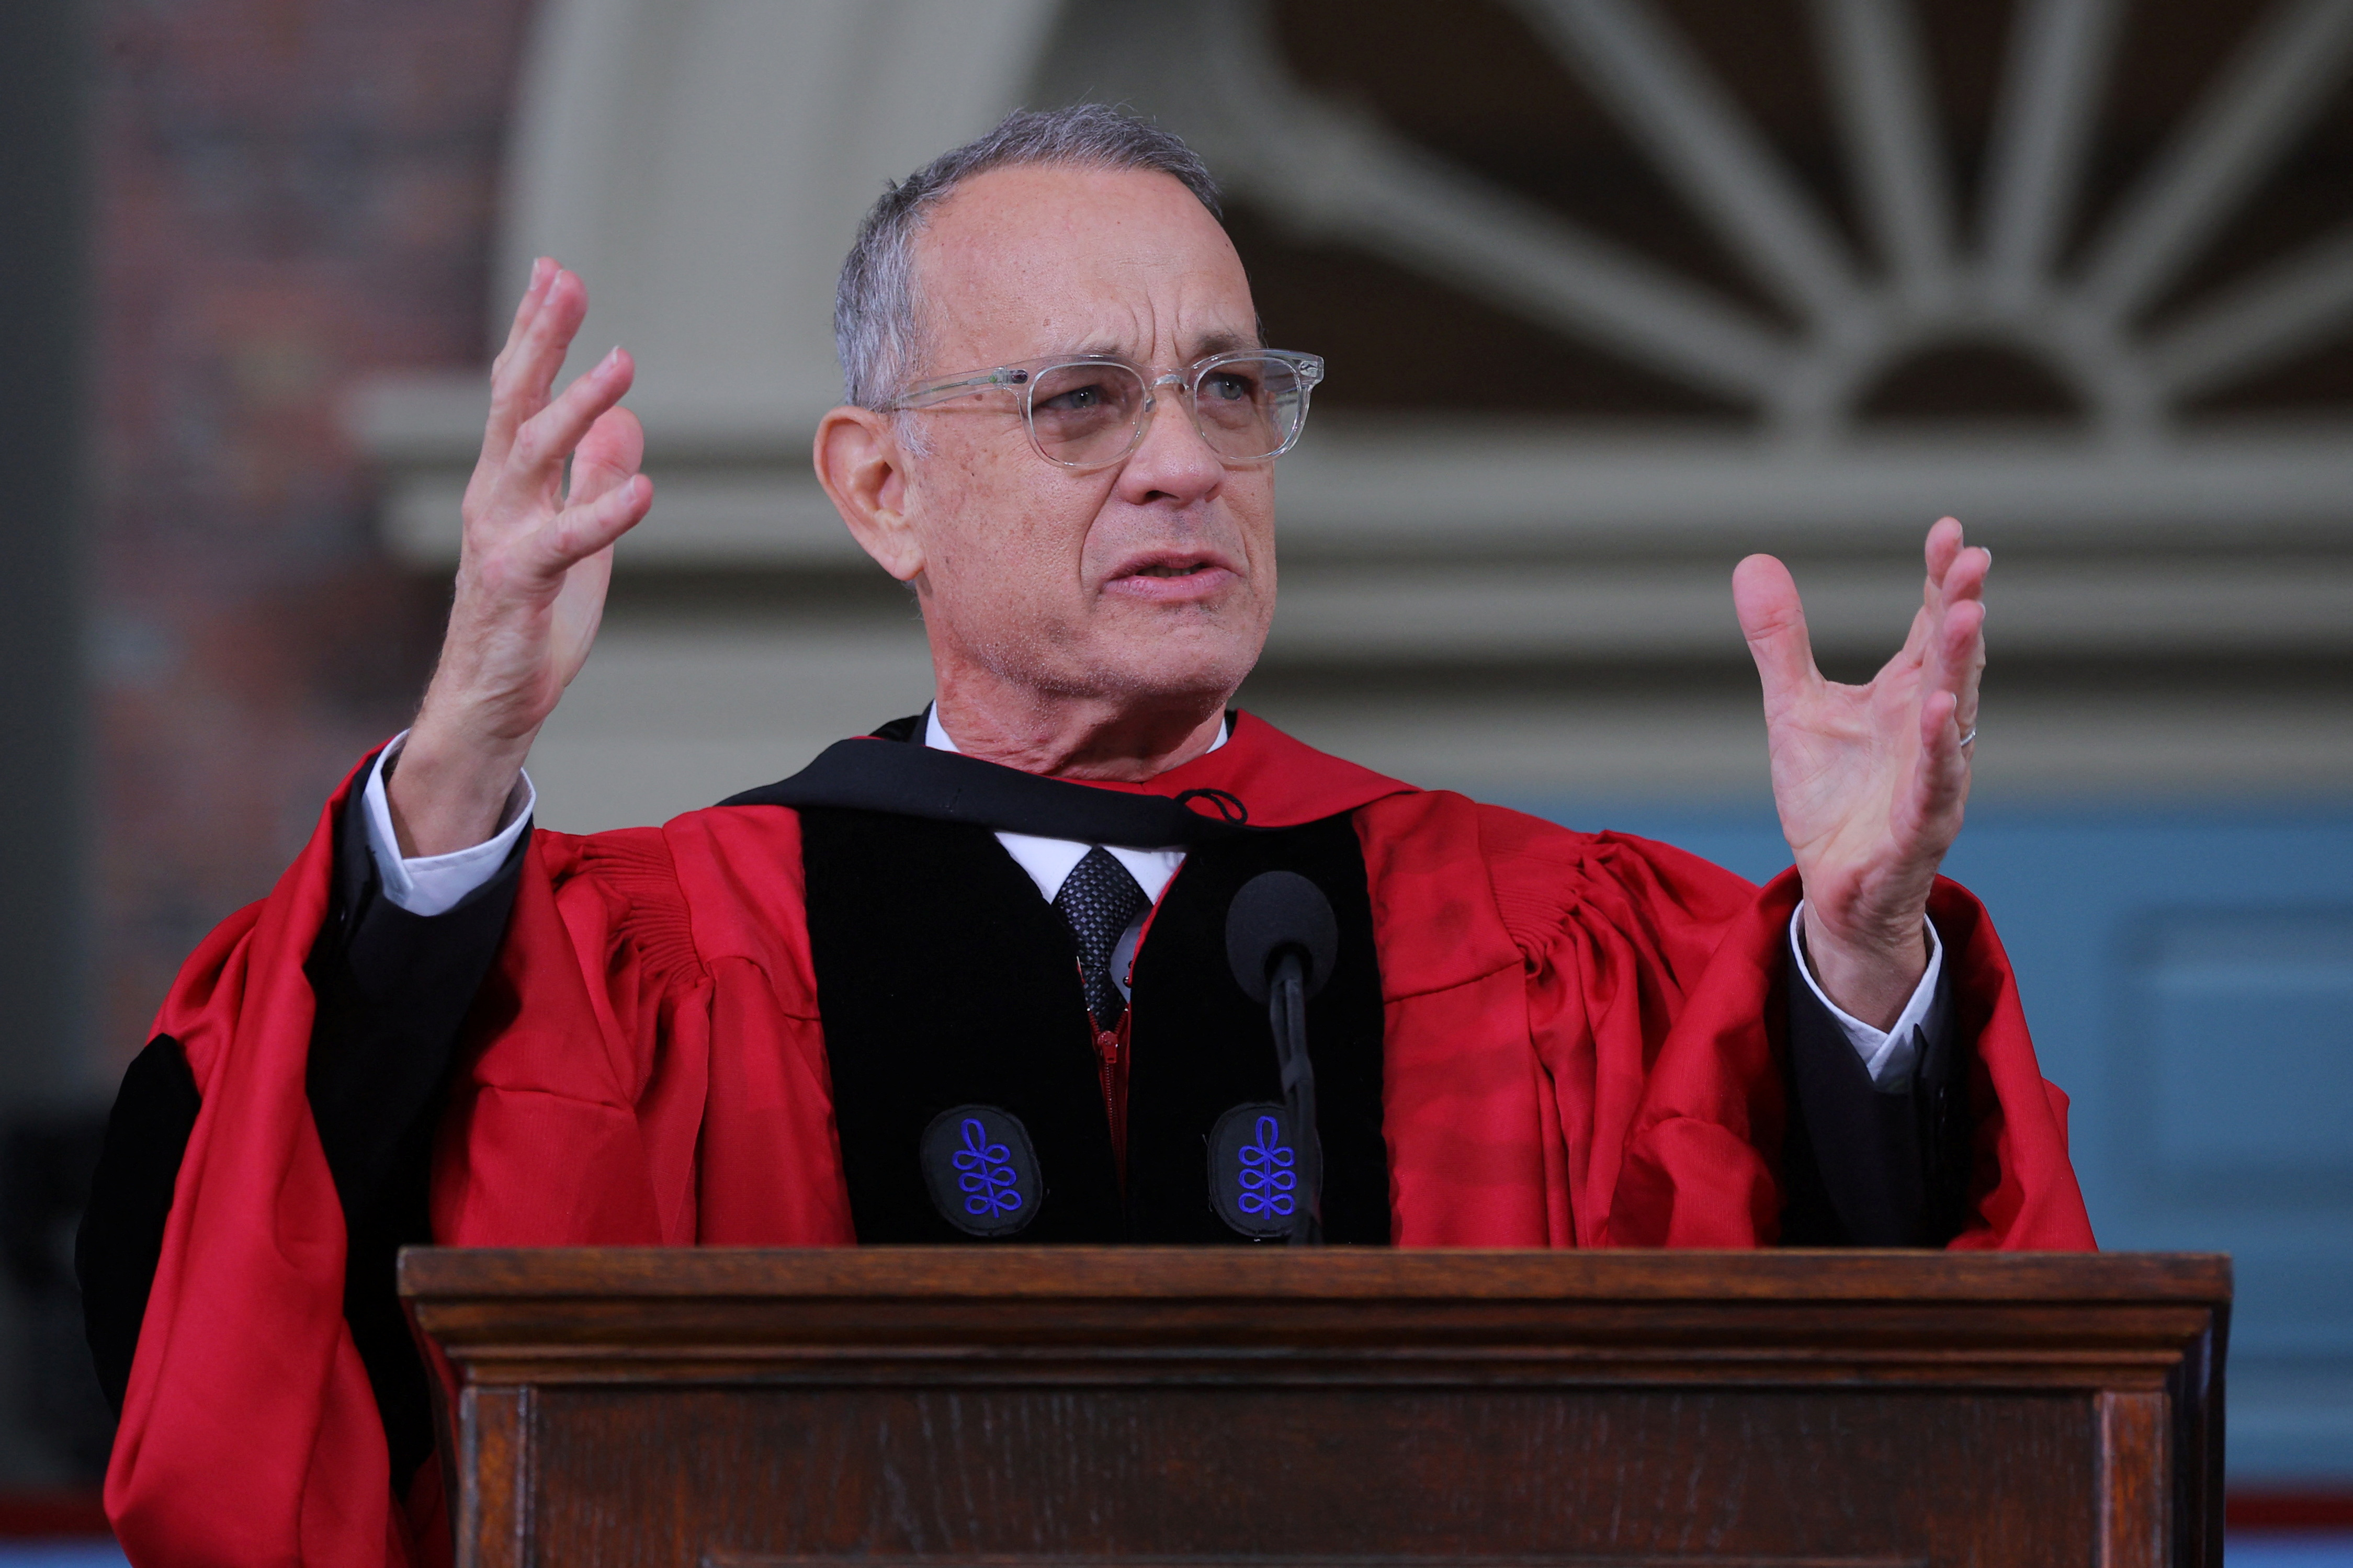 El emotivo discurso de Tom Hanks ante los graduados de Harvard